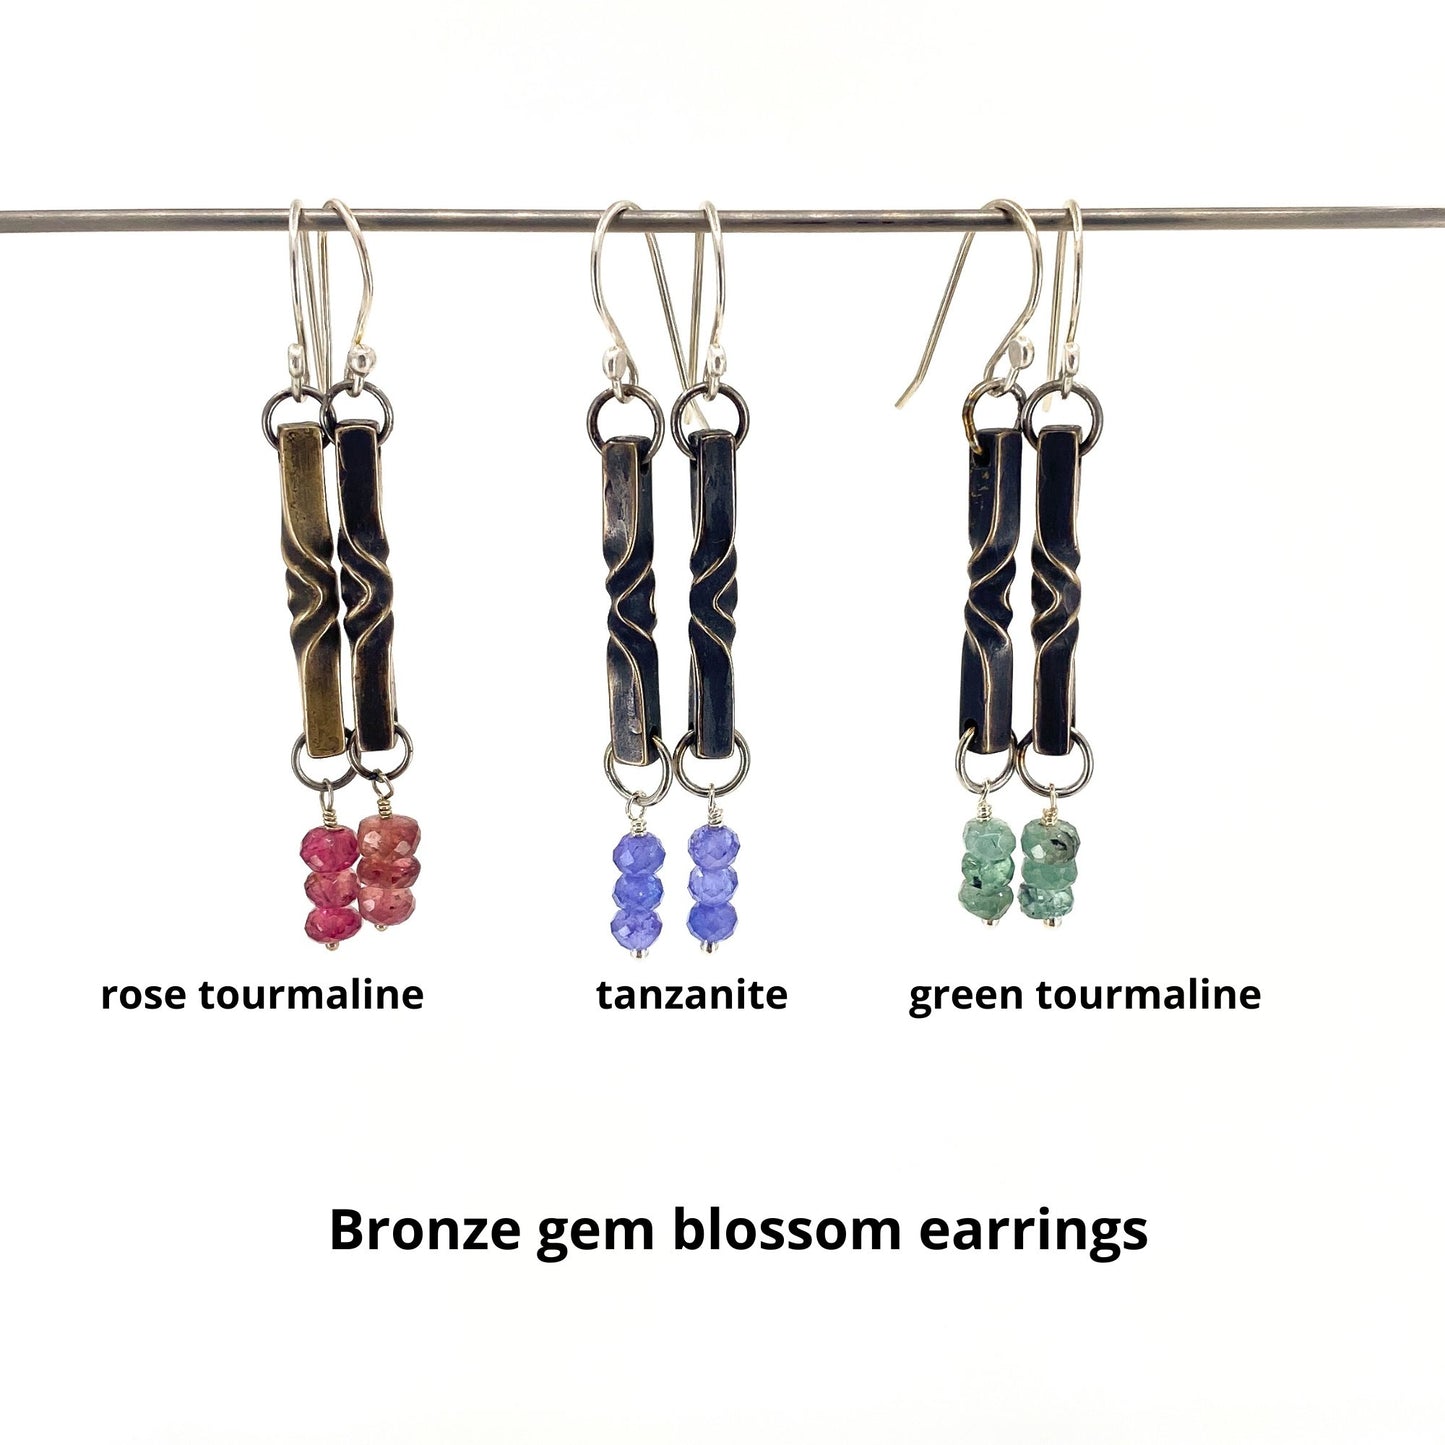 Bronze Blossom Earrings